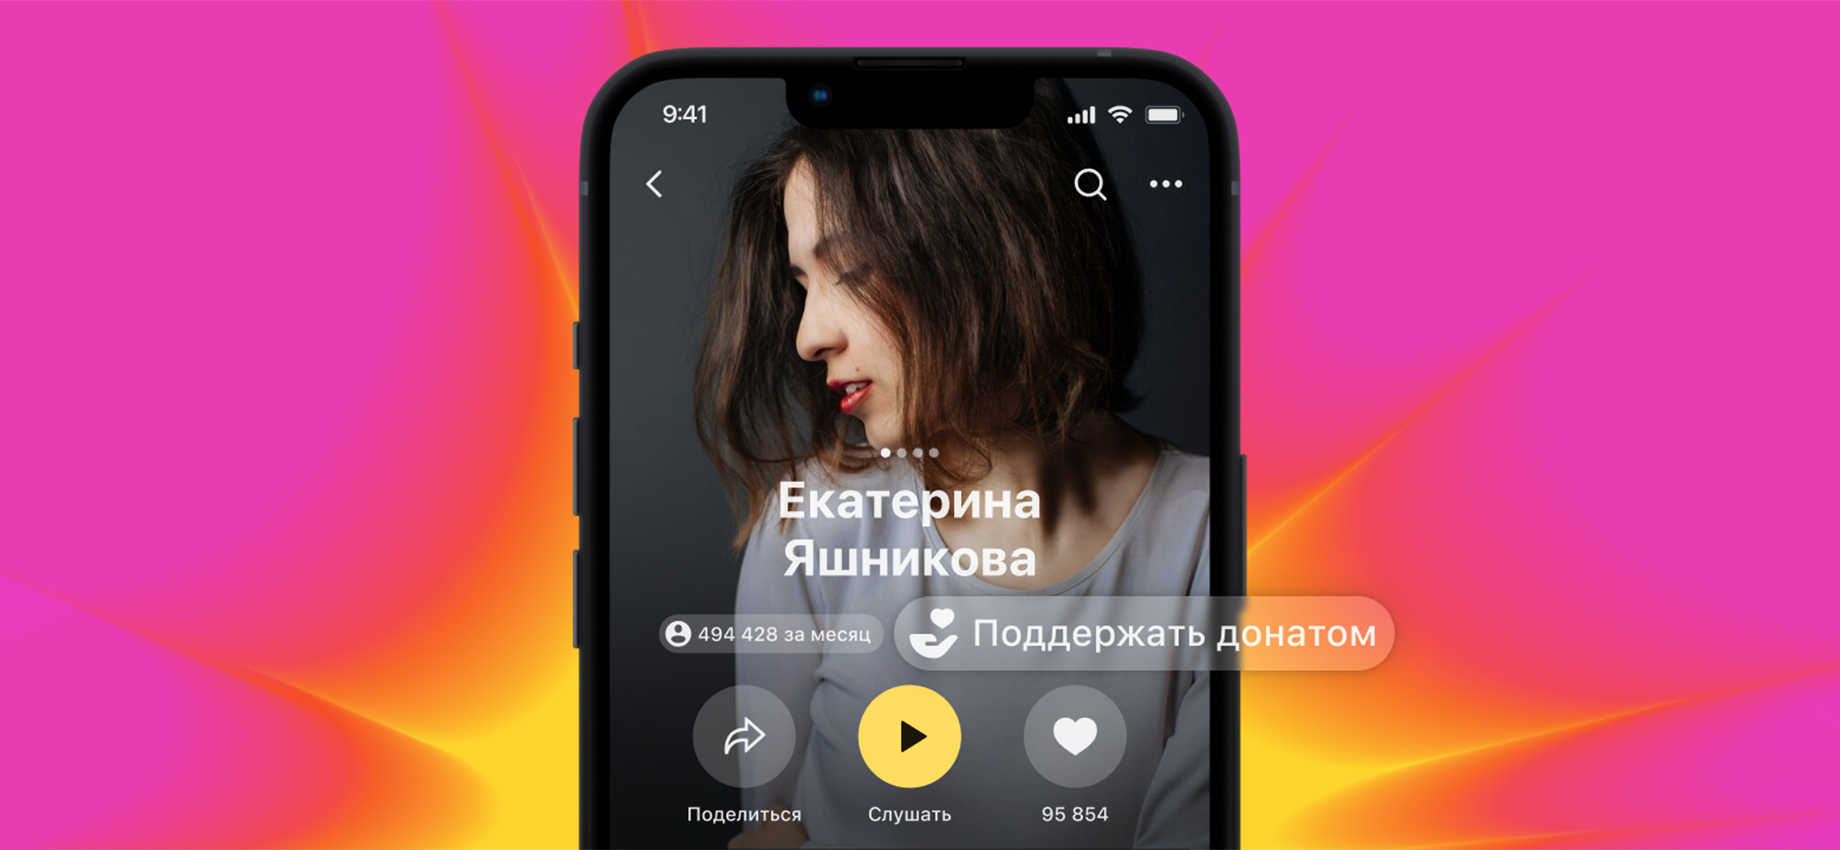 «Яндекс-музыка» запустила донаты: пользователи могут поддержать любимых артистов